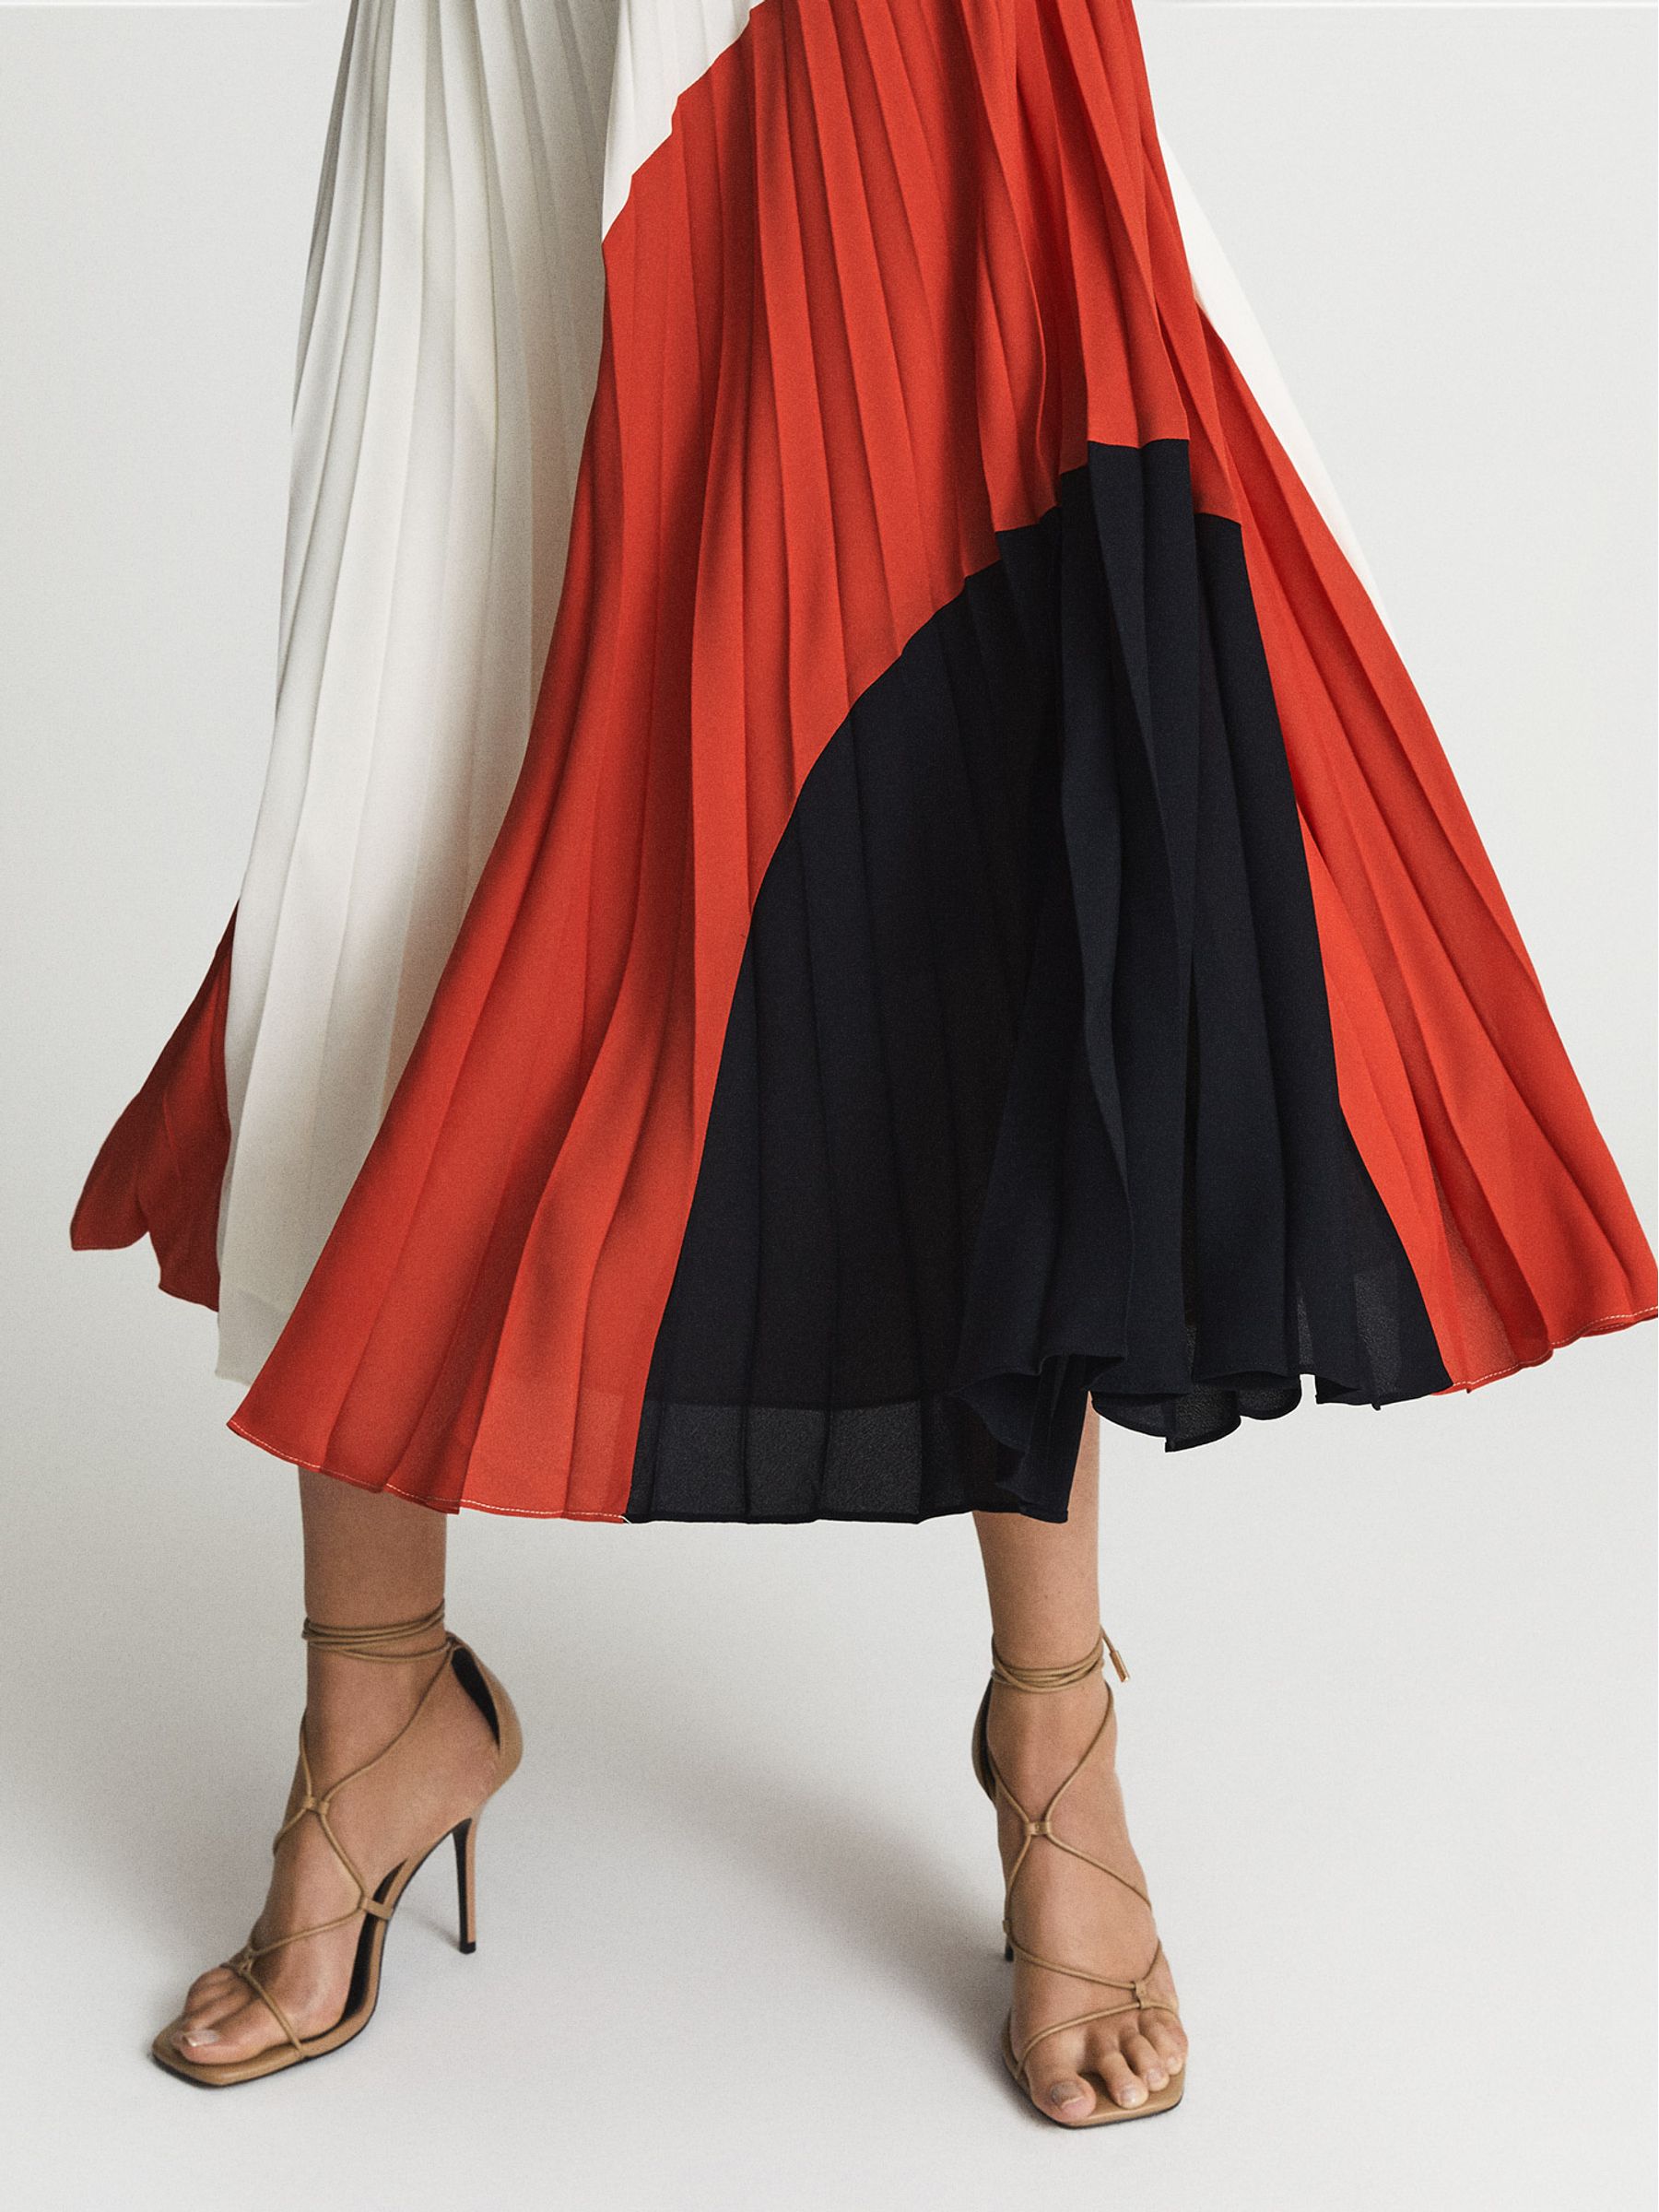 Reiss Murphy Pleated Midi Skirt | REISS Australia